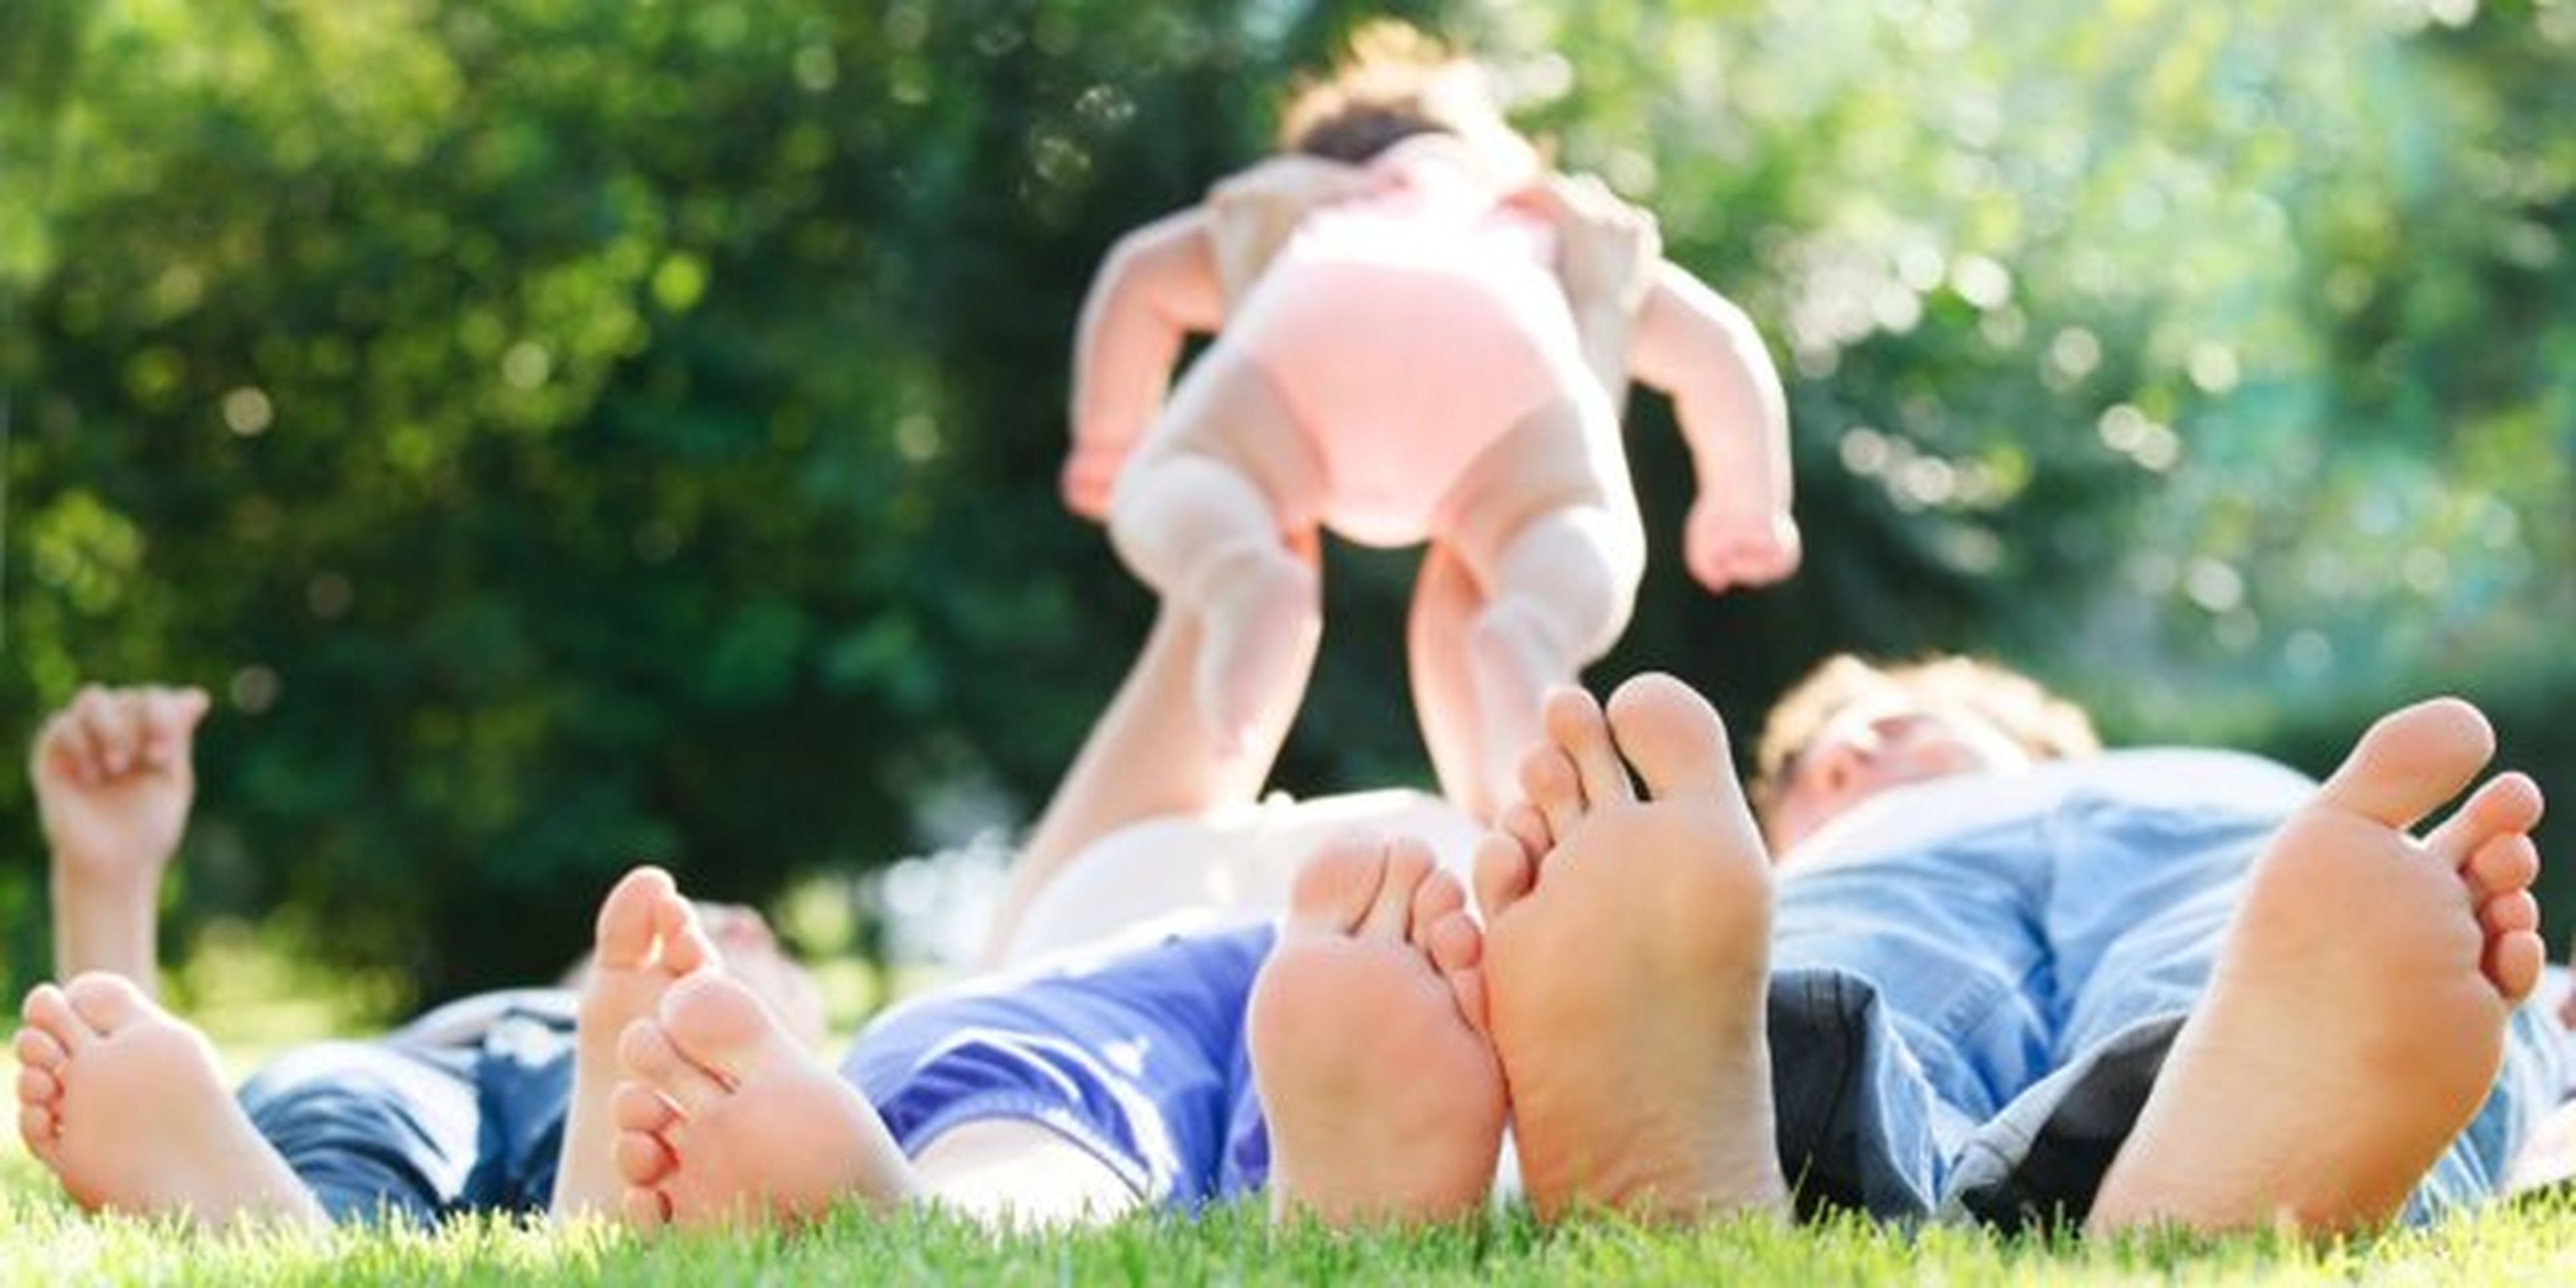 padres jugando con su bebe en el parque